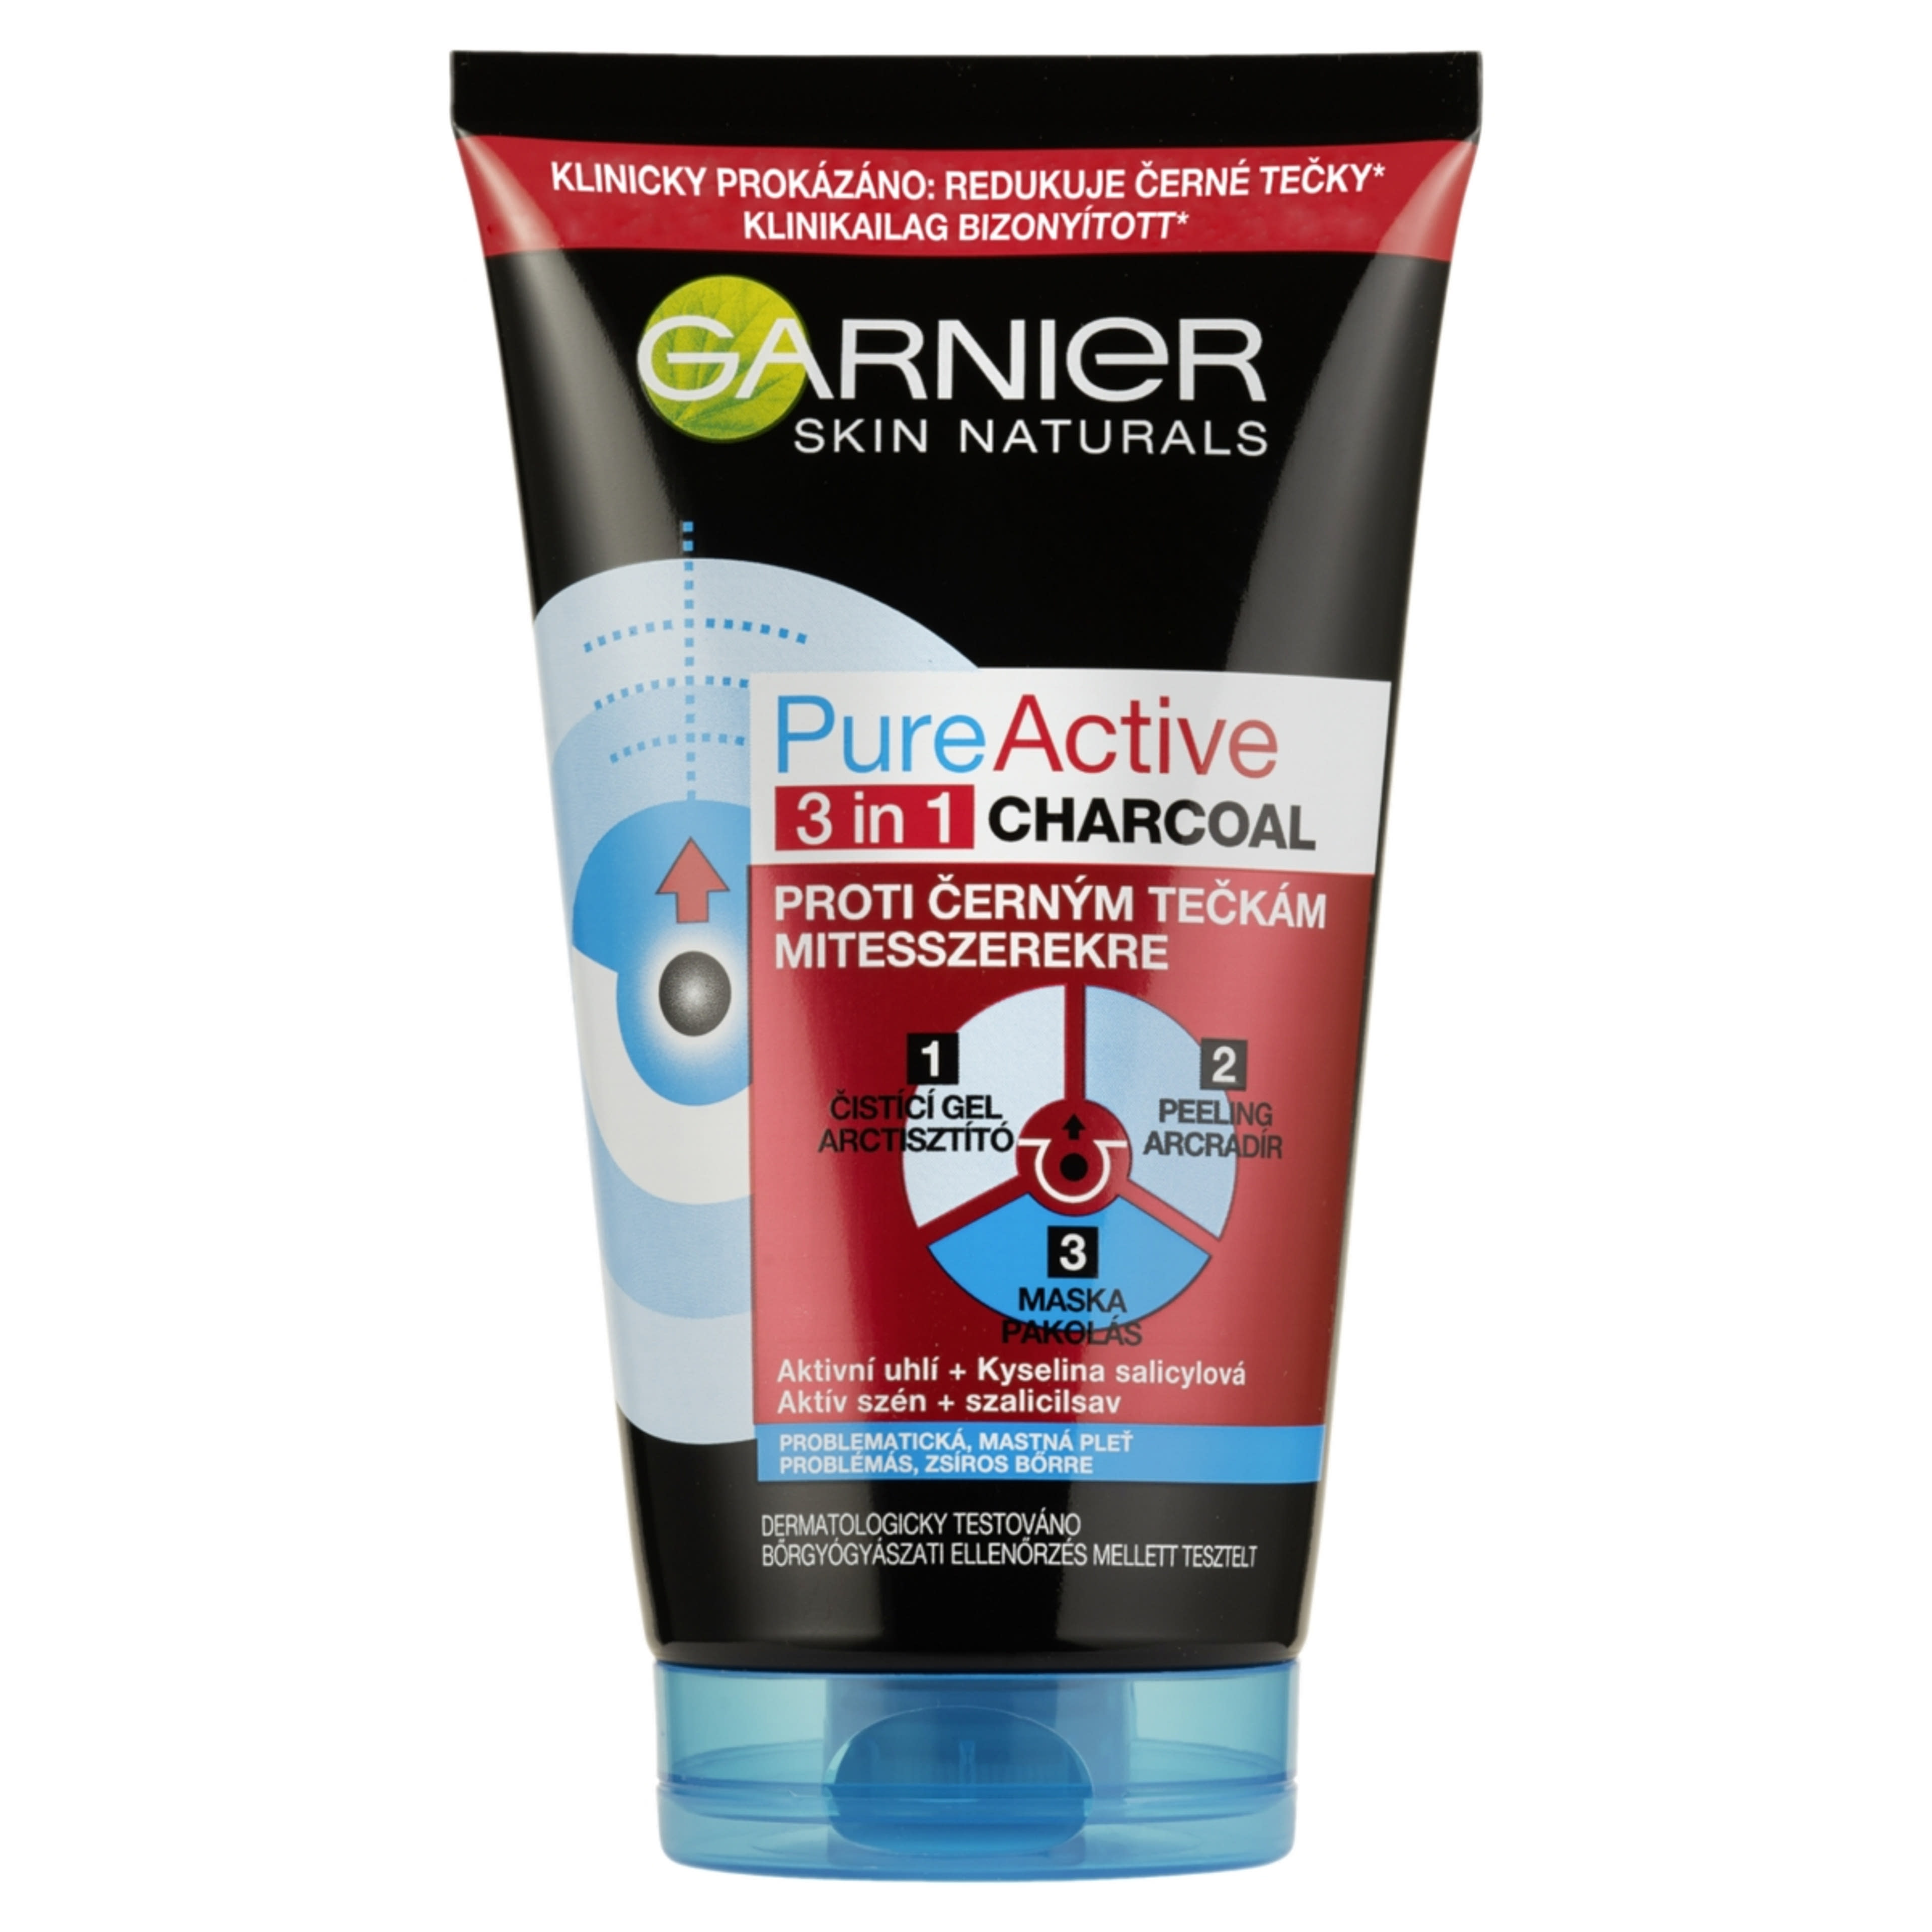 Garnier Skin Naturals Pure Active 3in1 Mitesszerek Ellen Arcmaszk Aktív Szénnel - 150 ml-1